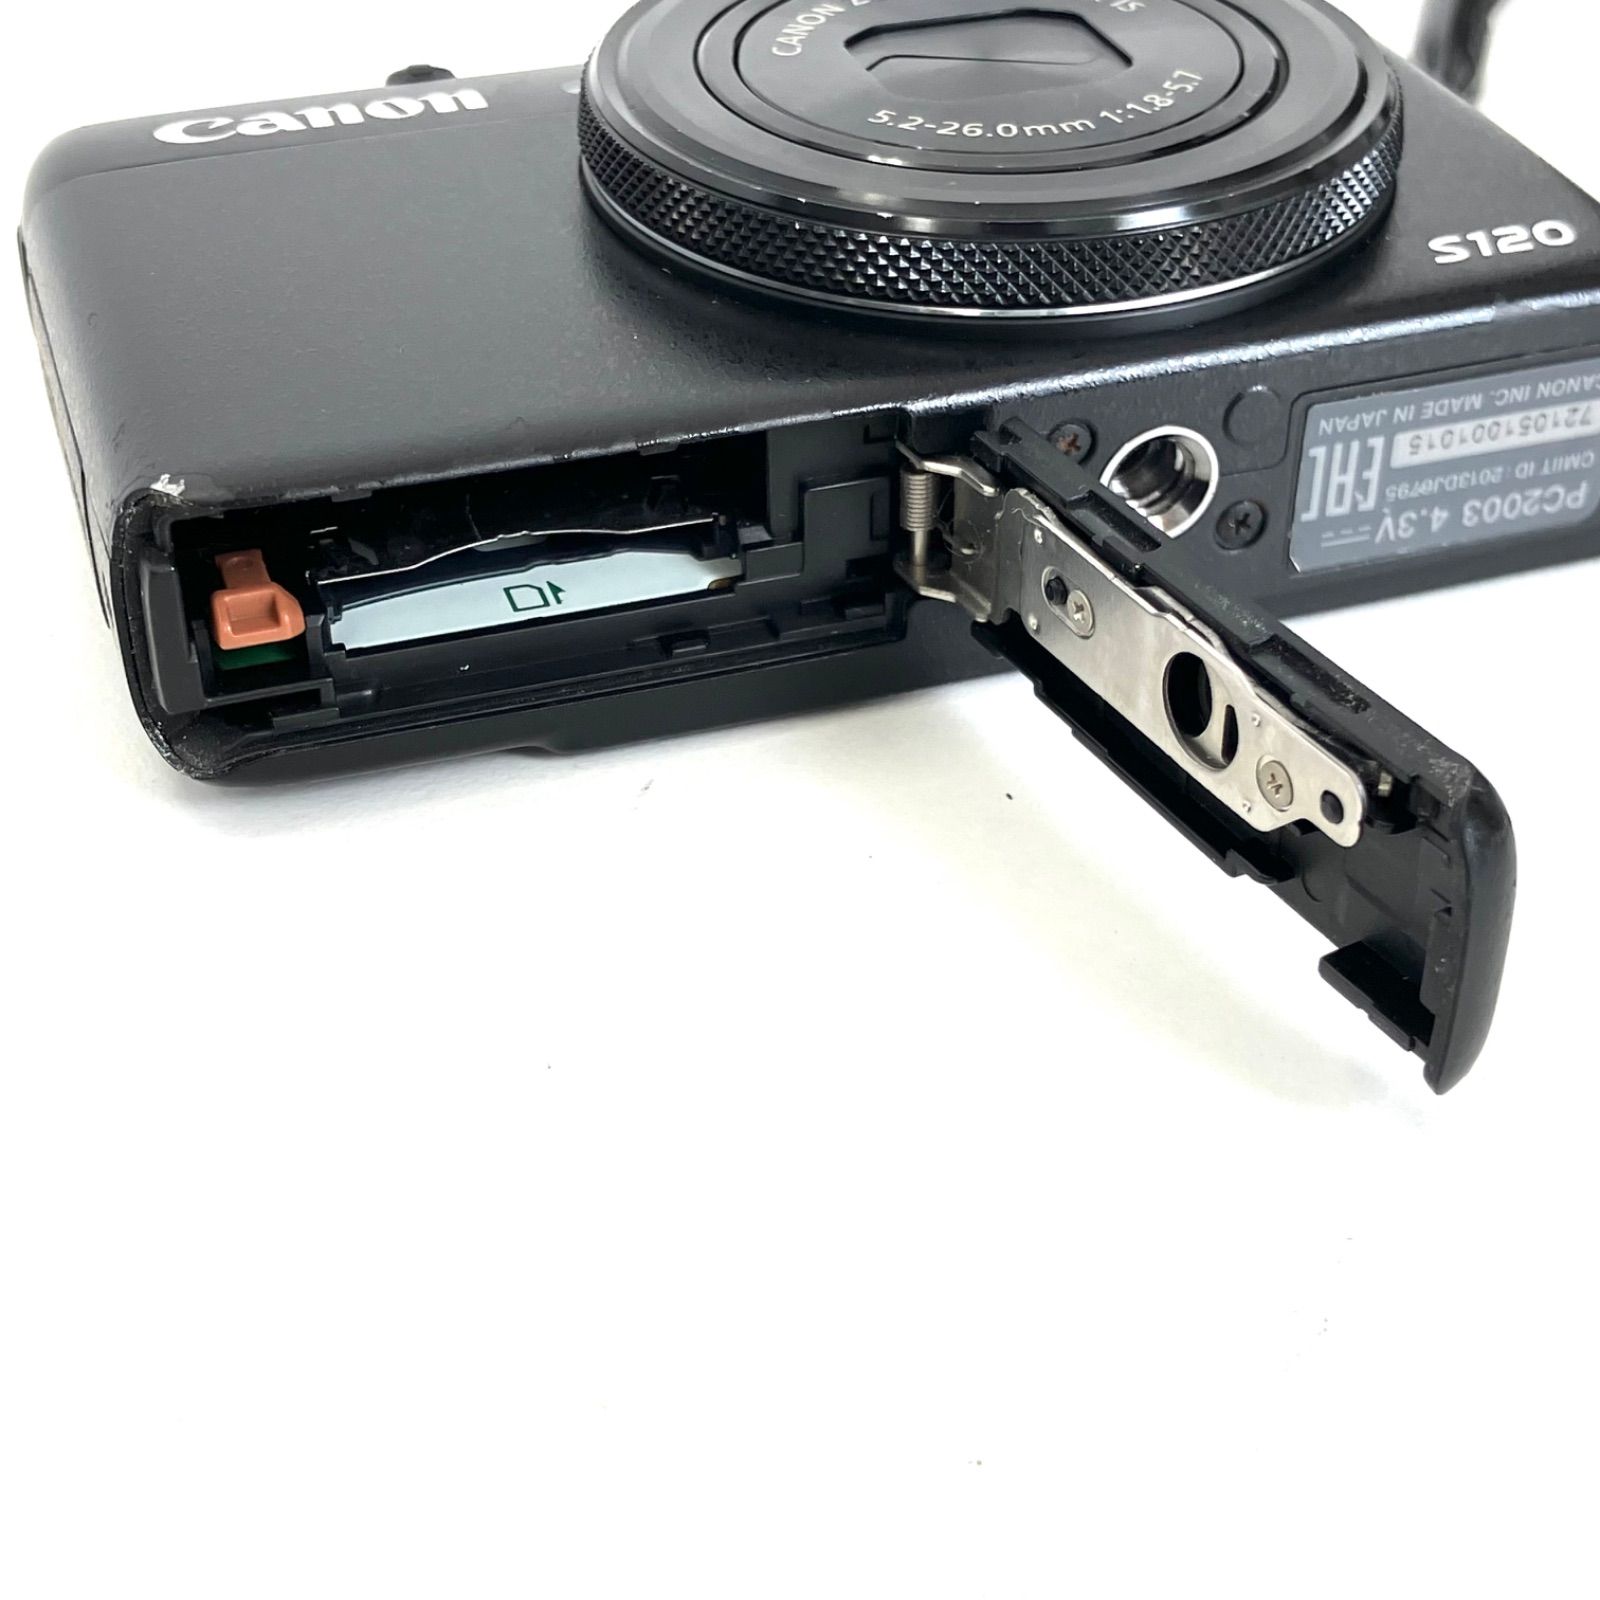 10700】 Canon PowerShot S120 ブラック 充電器つき - メルカリ